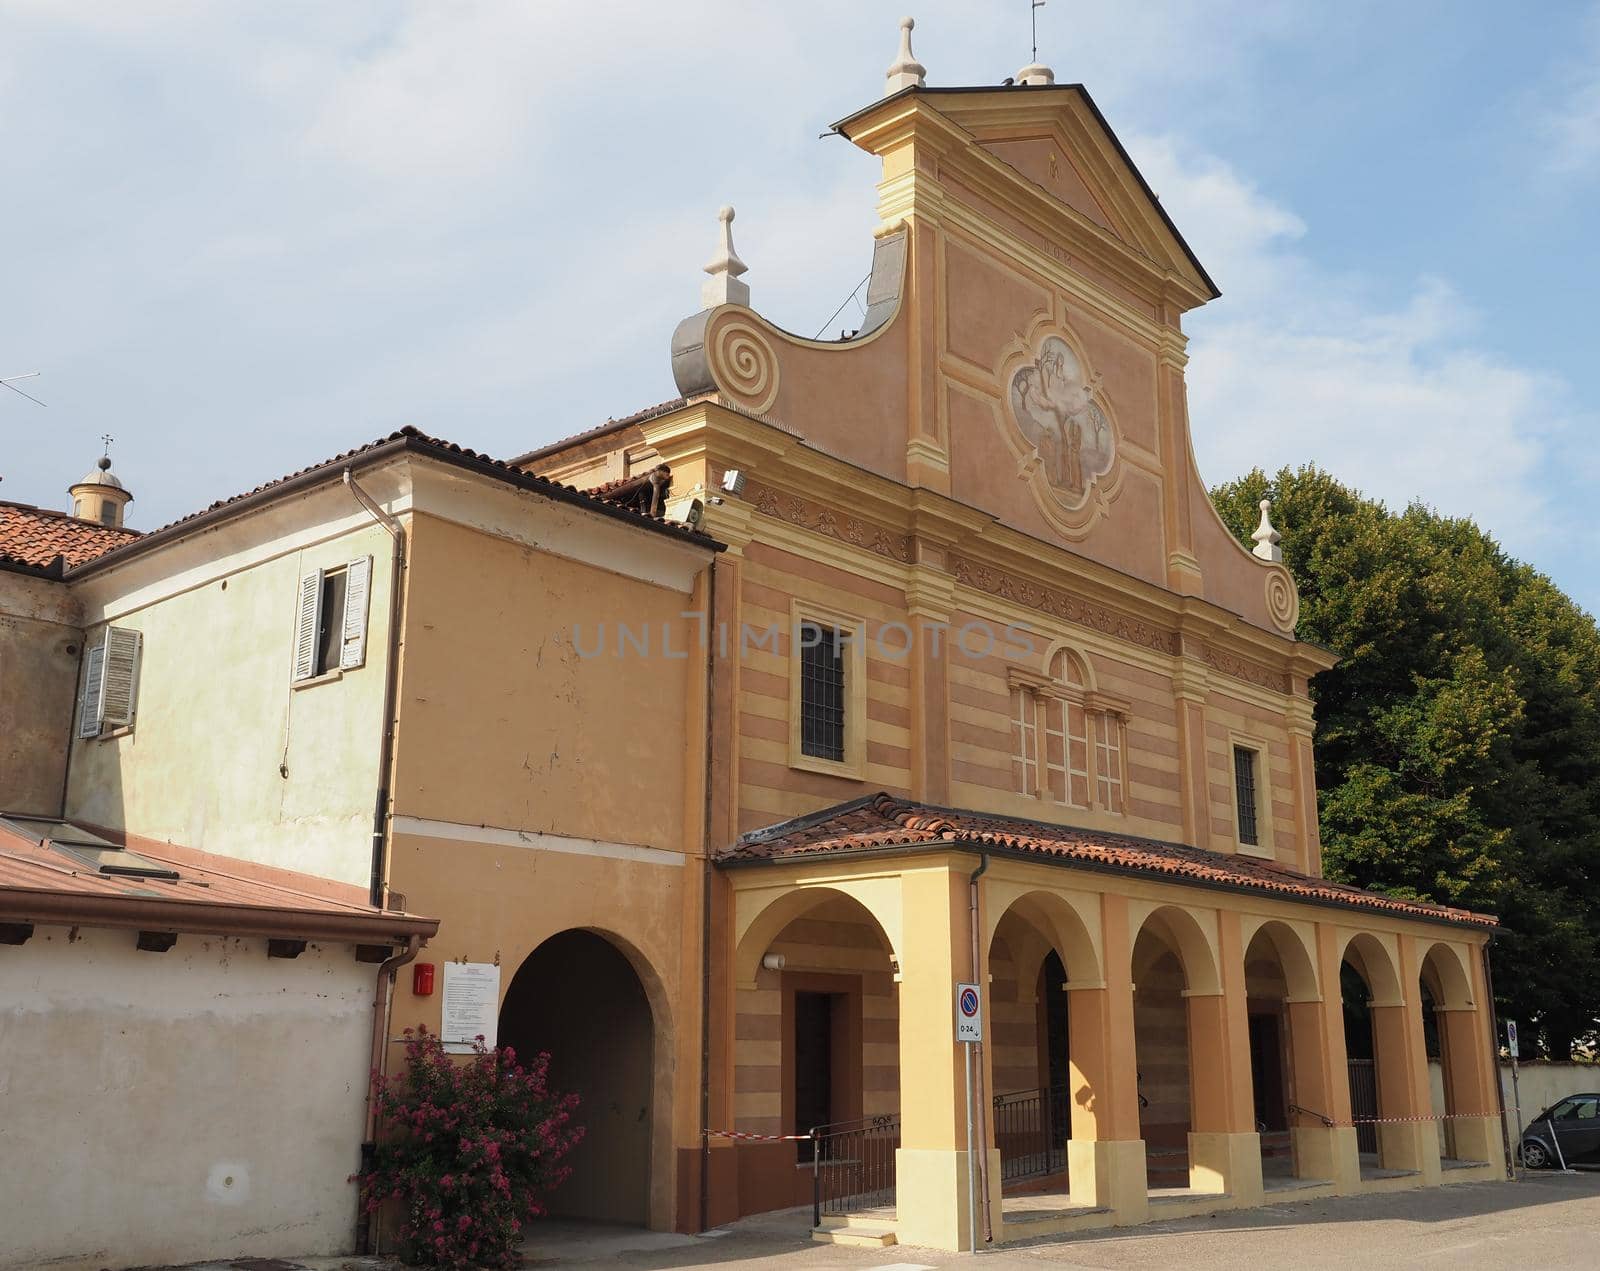 Santuario di Madonna del Trompone sanctuary church in Moncrivello, Italy